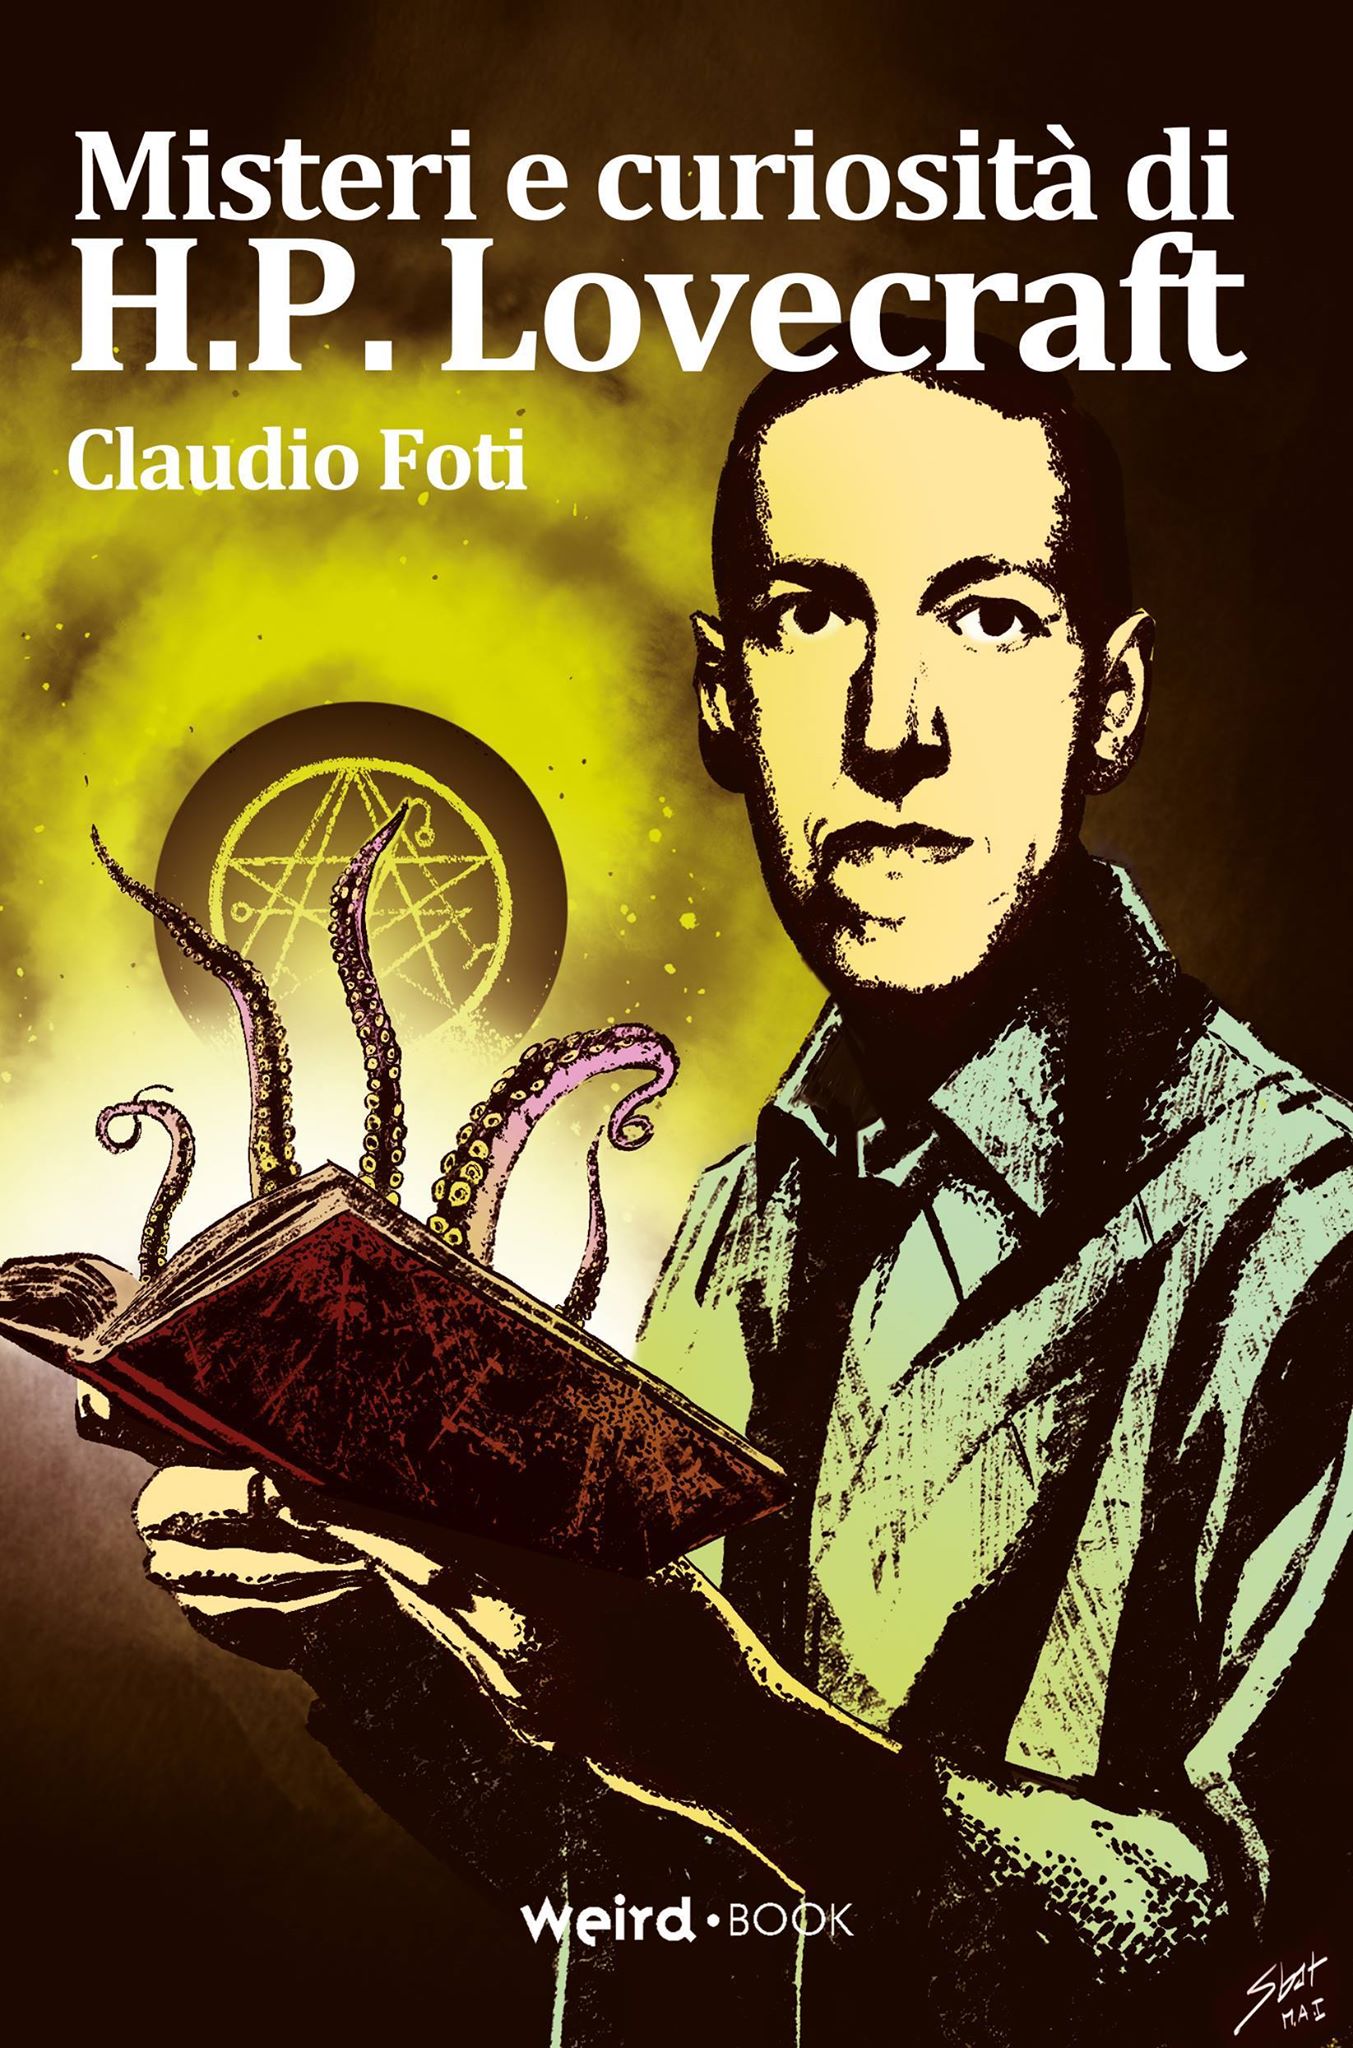 Libri Claudio Foti - Misteri E Curiosita Di H.P. Lovecraft NUOVO SIGILLATO, EDIZIONE DEL 20/06/2018 SUBITO DISPONIBILE